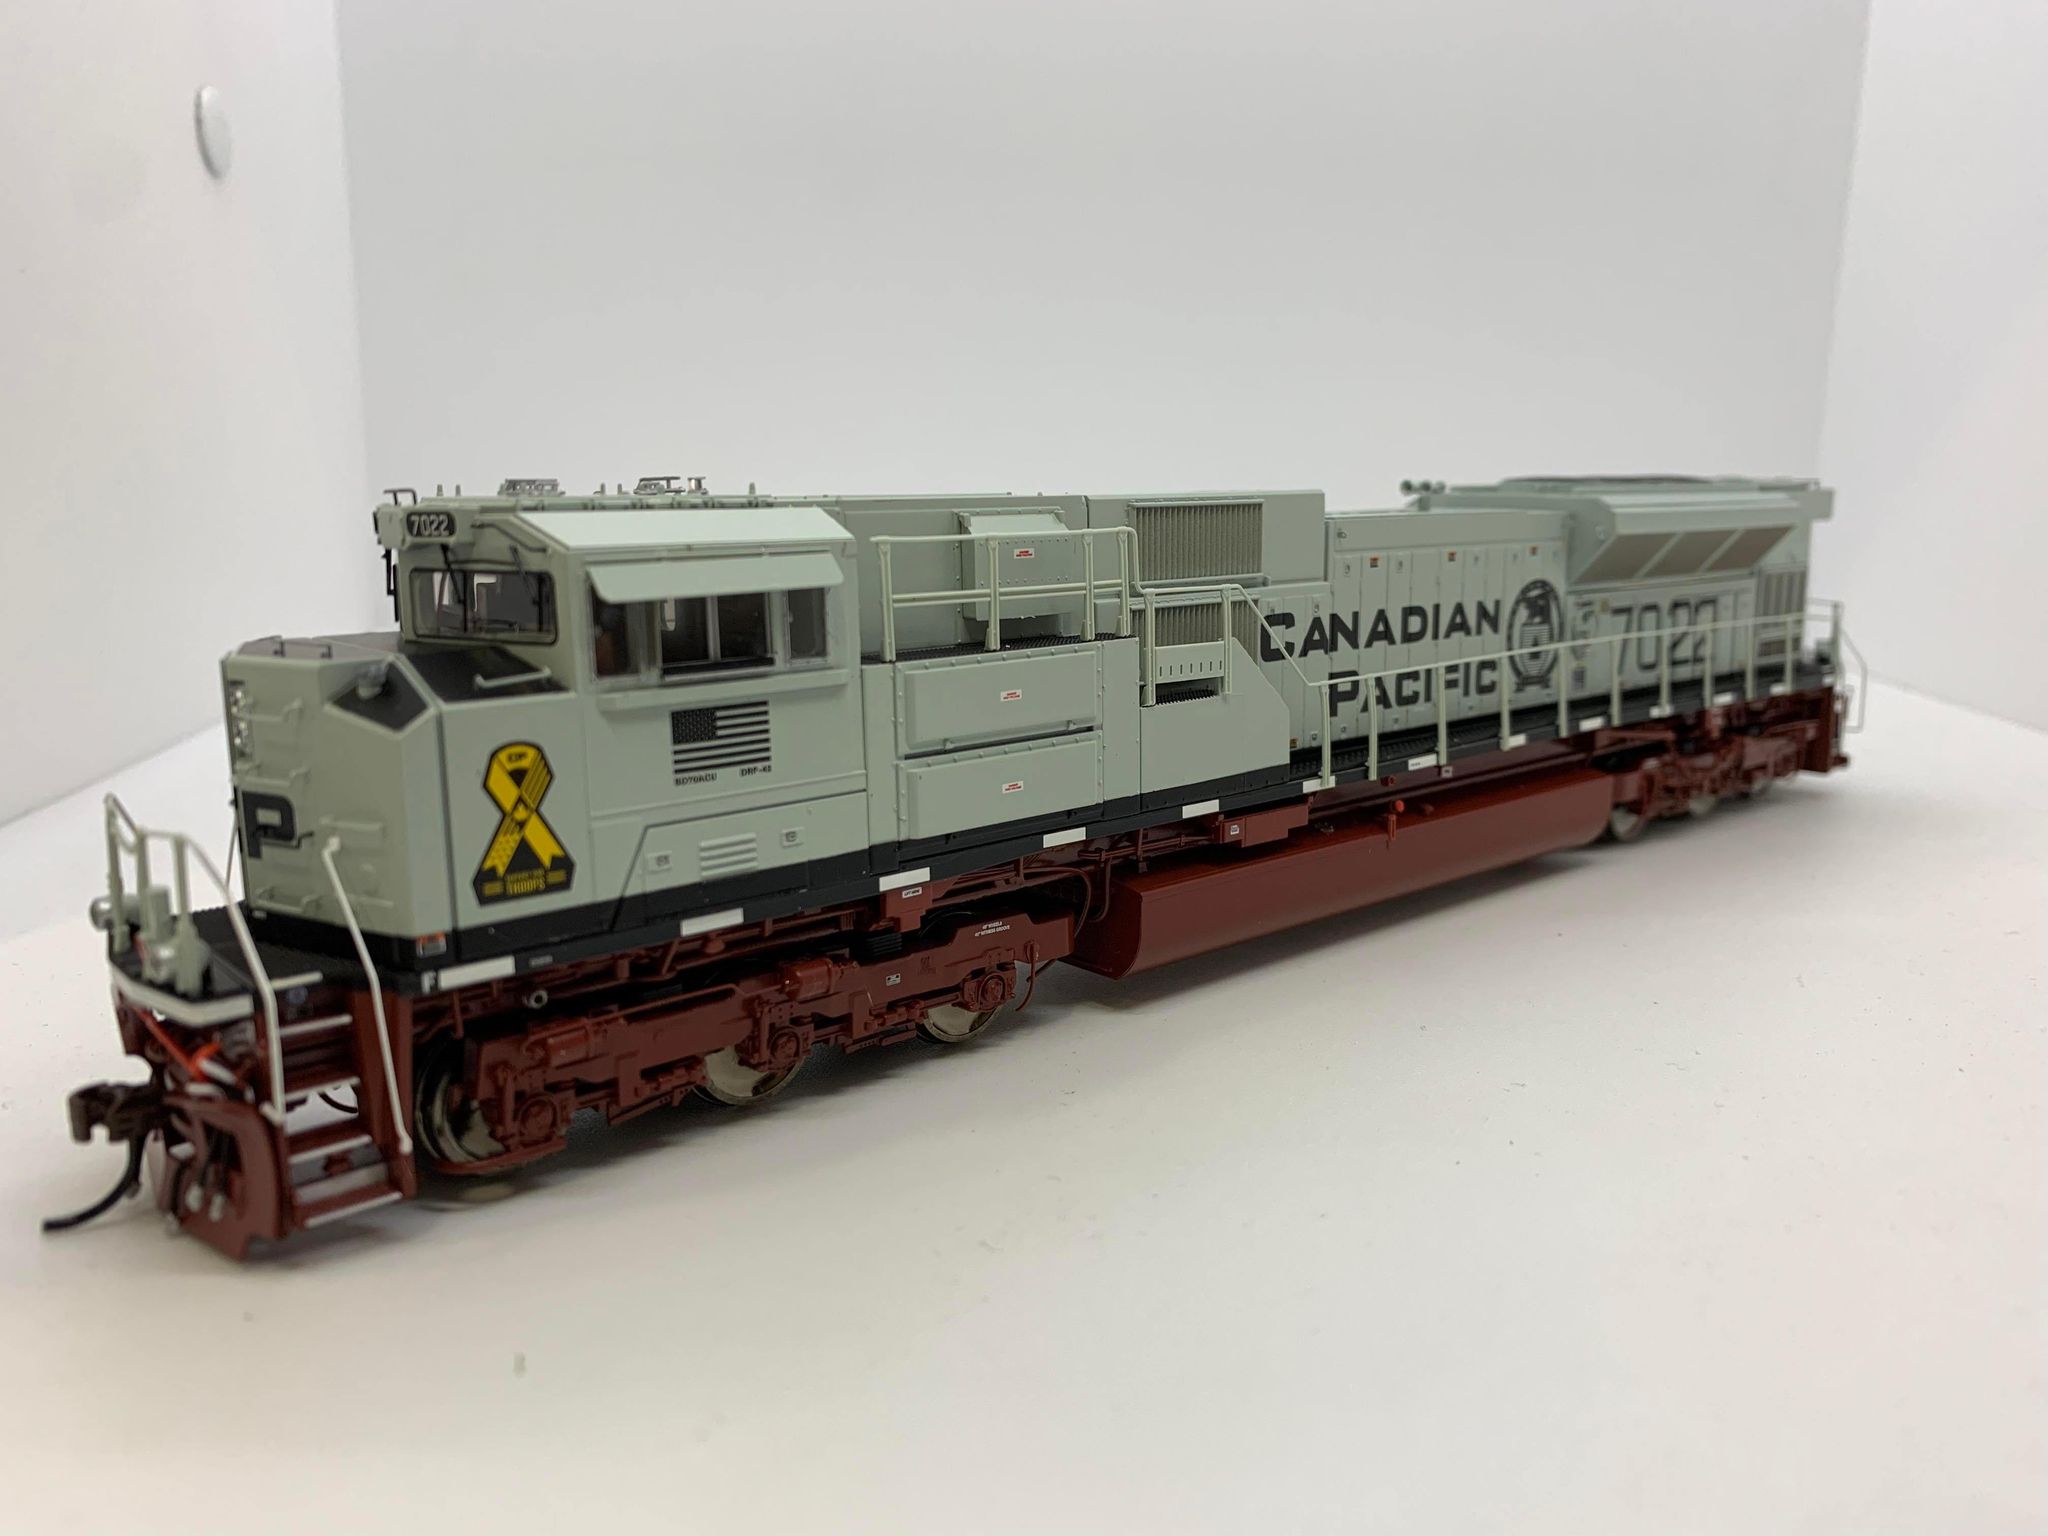 Otter Valley Railroad Model Trains - Tillsonburg, Ontario Canada ...